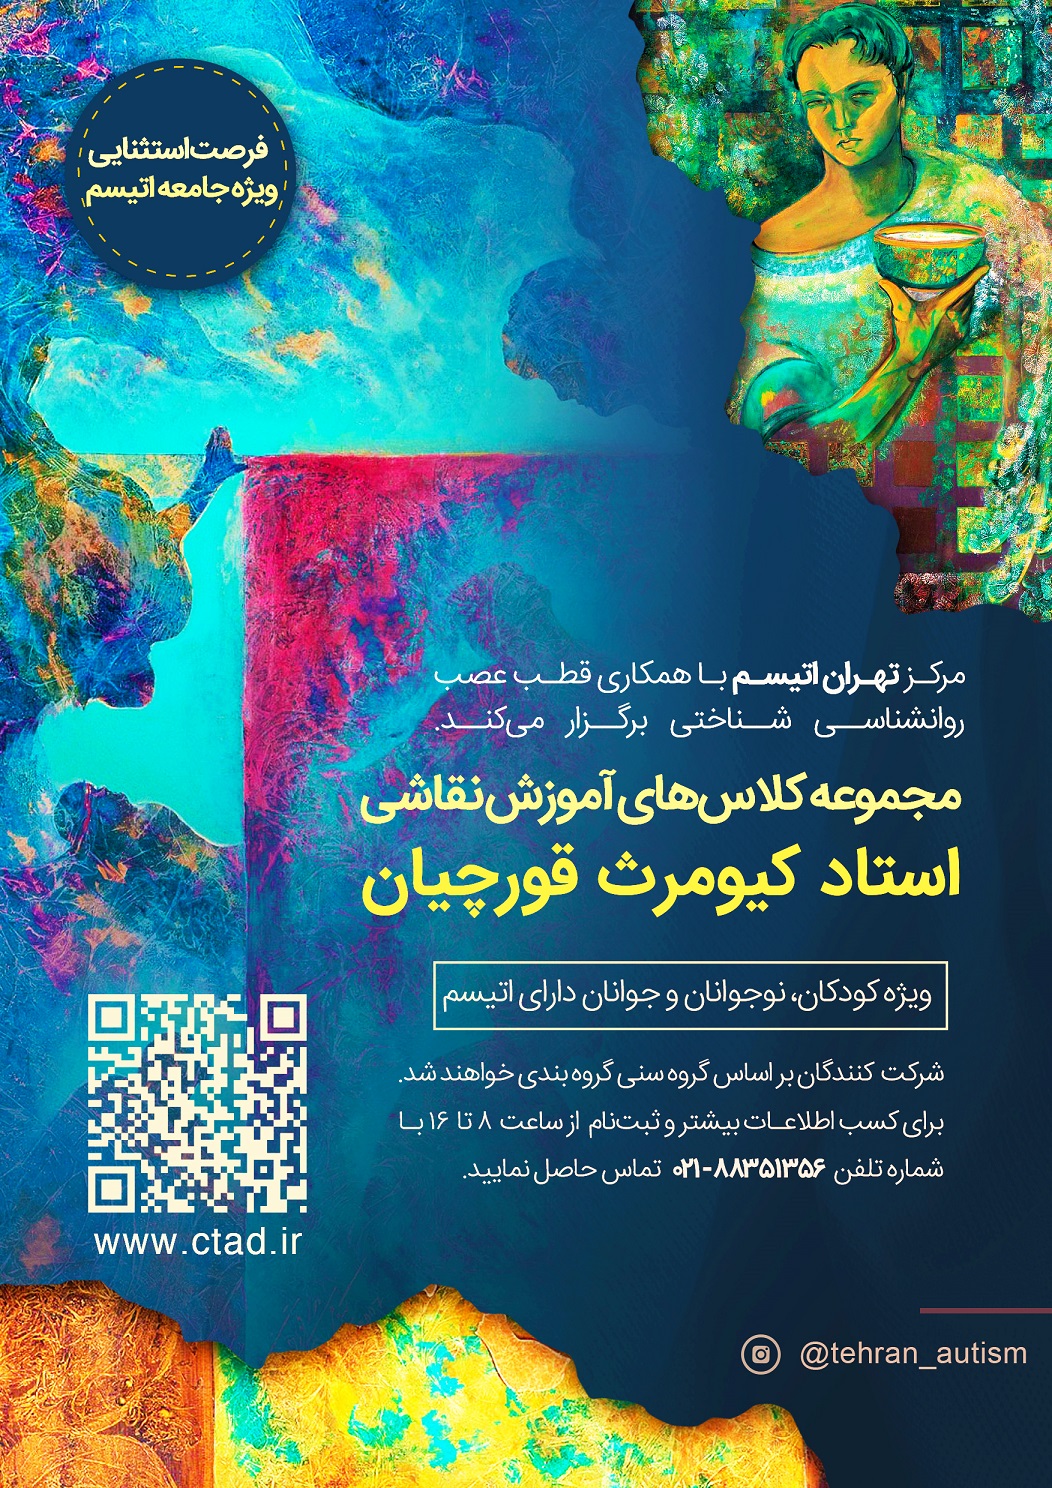 مجموعه کلاسهای نقاشی استاد کیومرث قورچیان ویژه رده های سنی مختلف اتیسم در مرکز تهران اتیسم